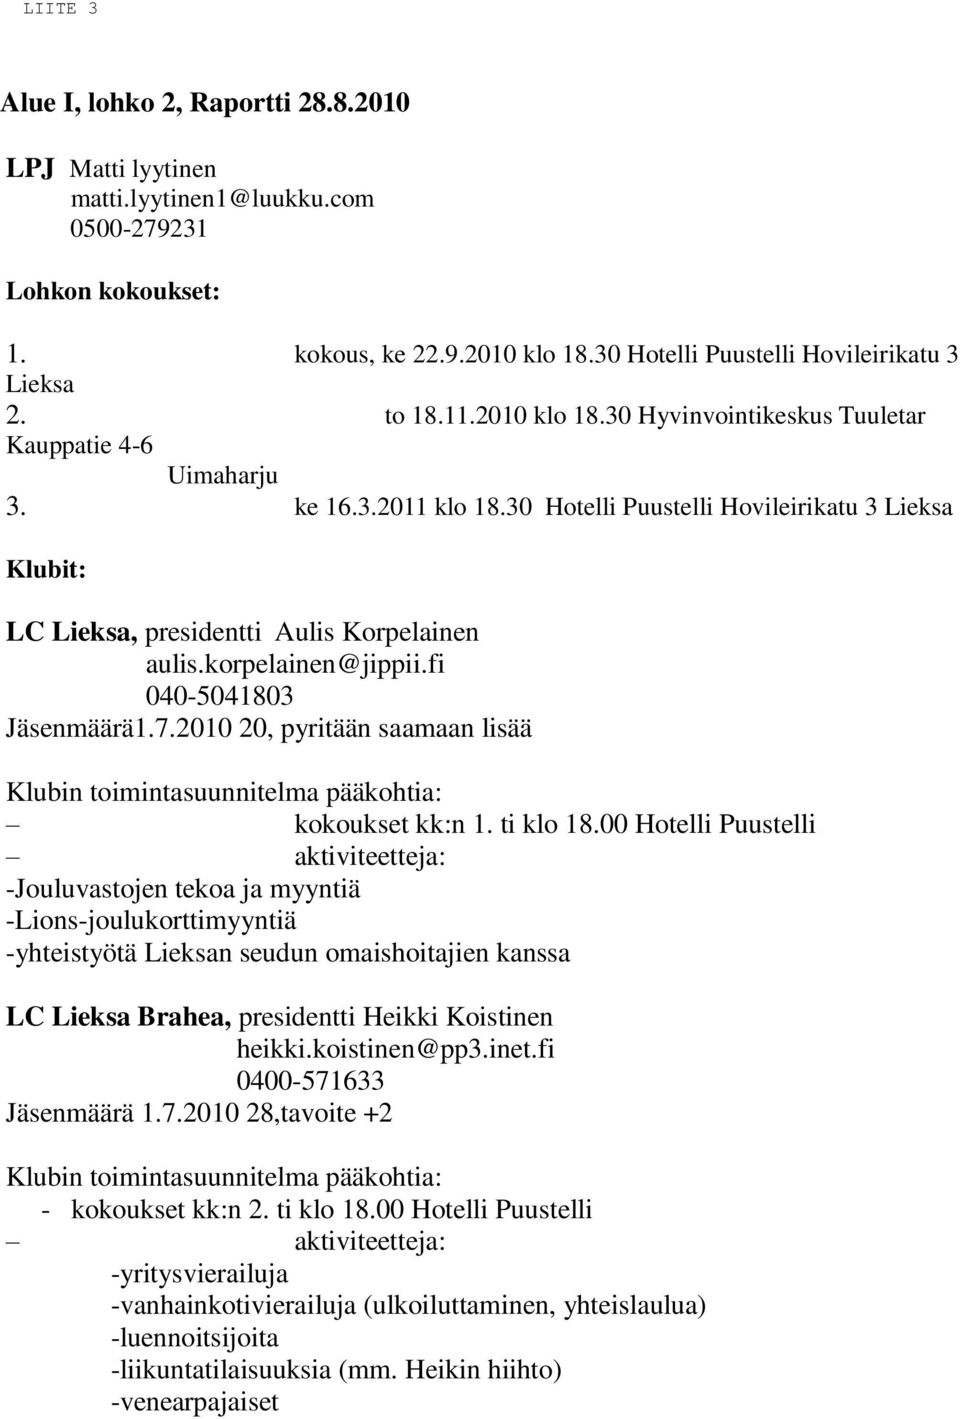 korpelainen@jippii.fi 040-5041803 Jäsenmäärä1.7.2010 20, pyritään saamaan lisää Klubin toimintasuunnitelma pääkohtia: kokoukset kk:n 1. ti klo 18.